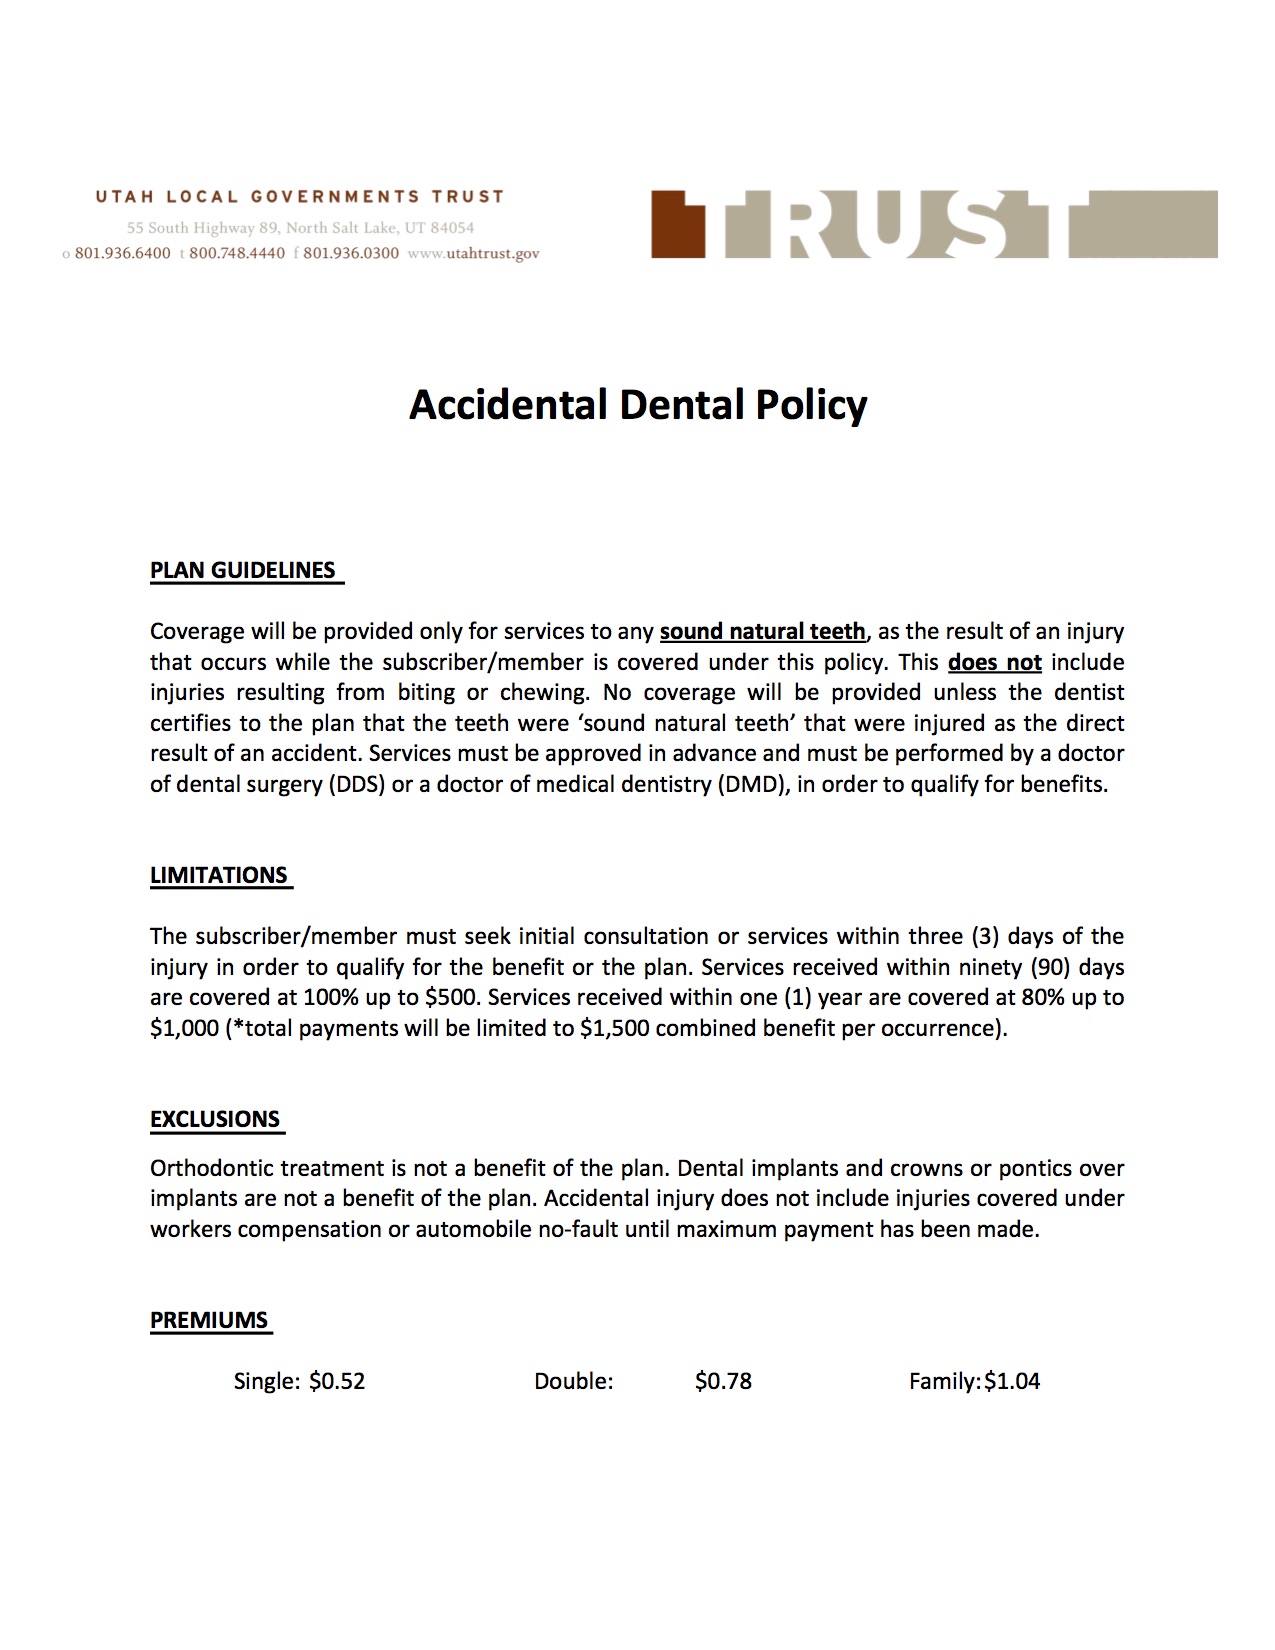 Accidental Dental Flyer